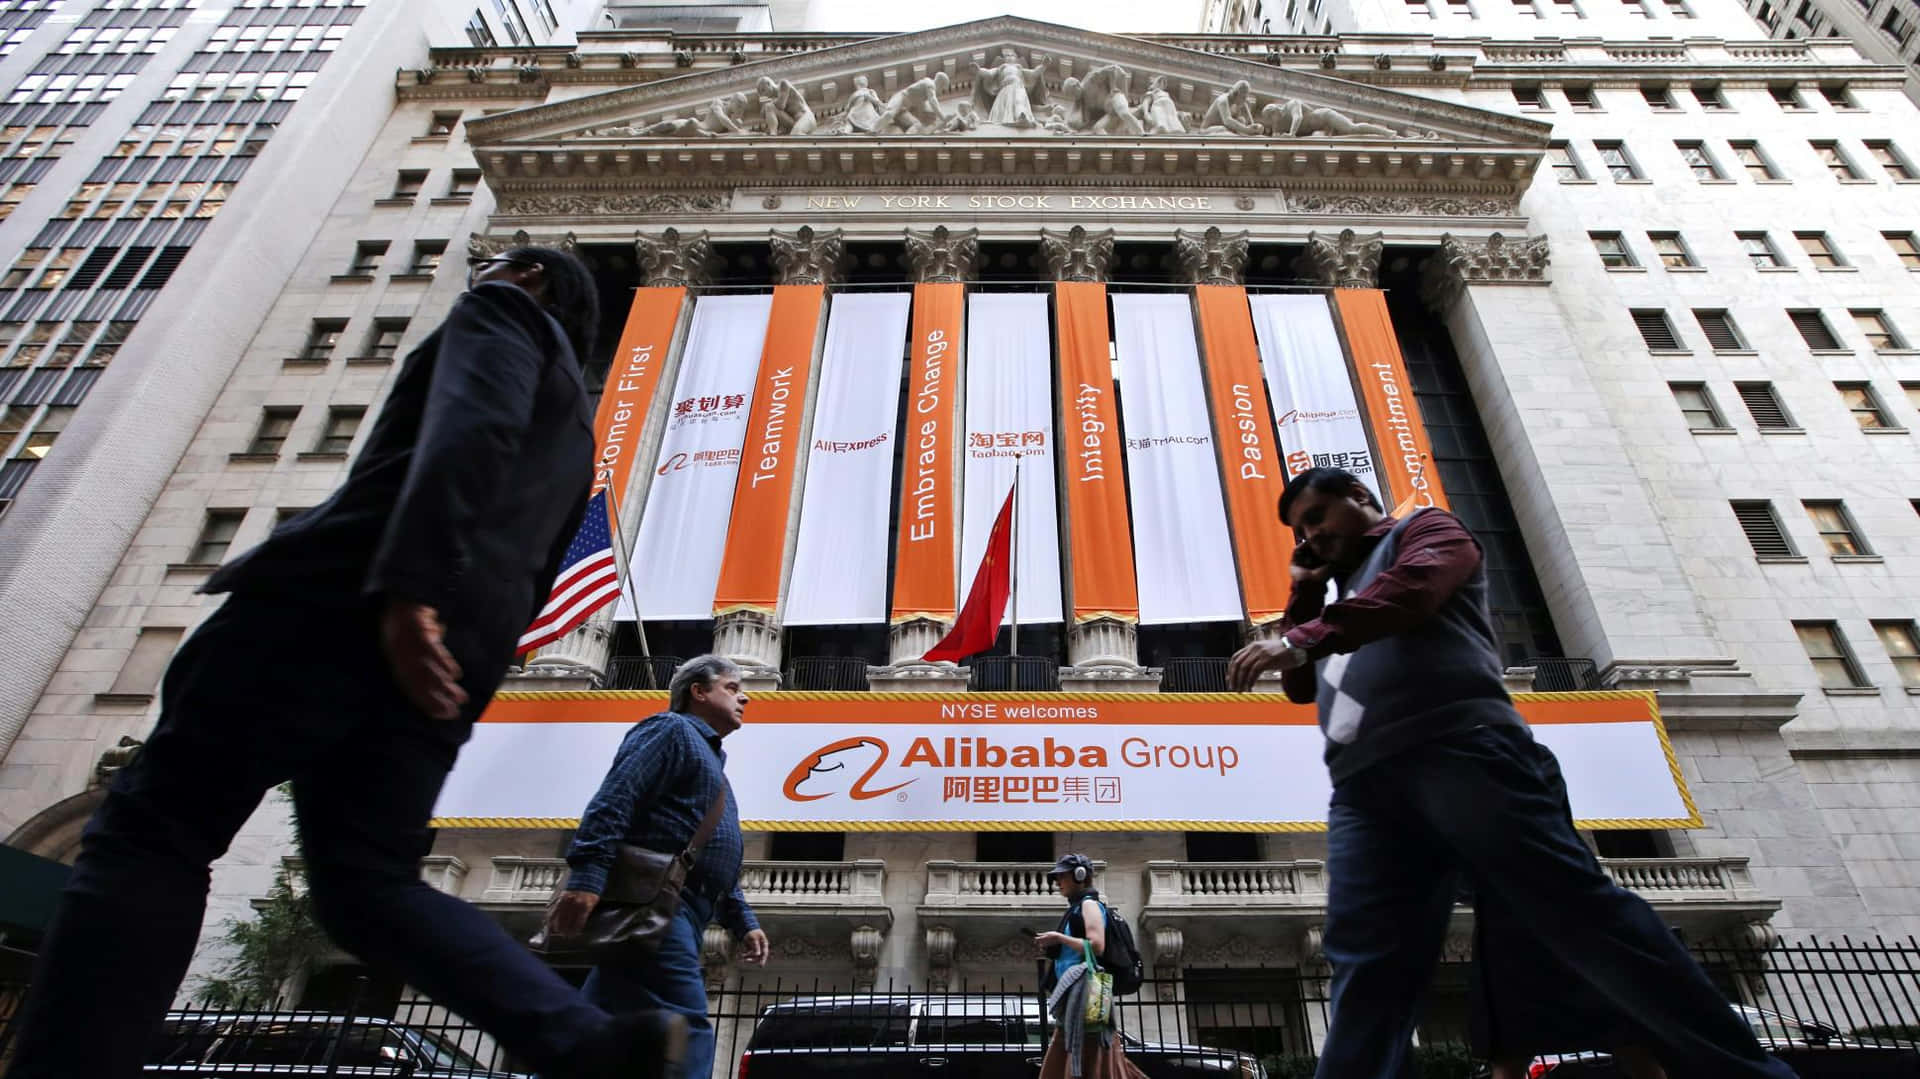 Ungruppo Di Persone Che Camminano Davanti A Un Edificio Con Un Cartello Di Alibaba